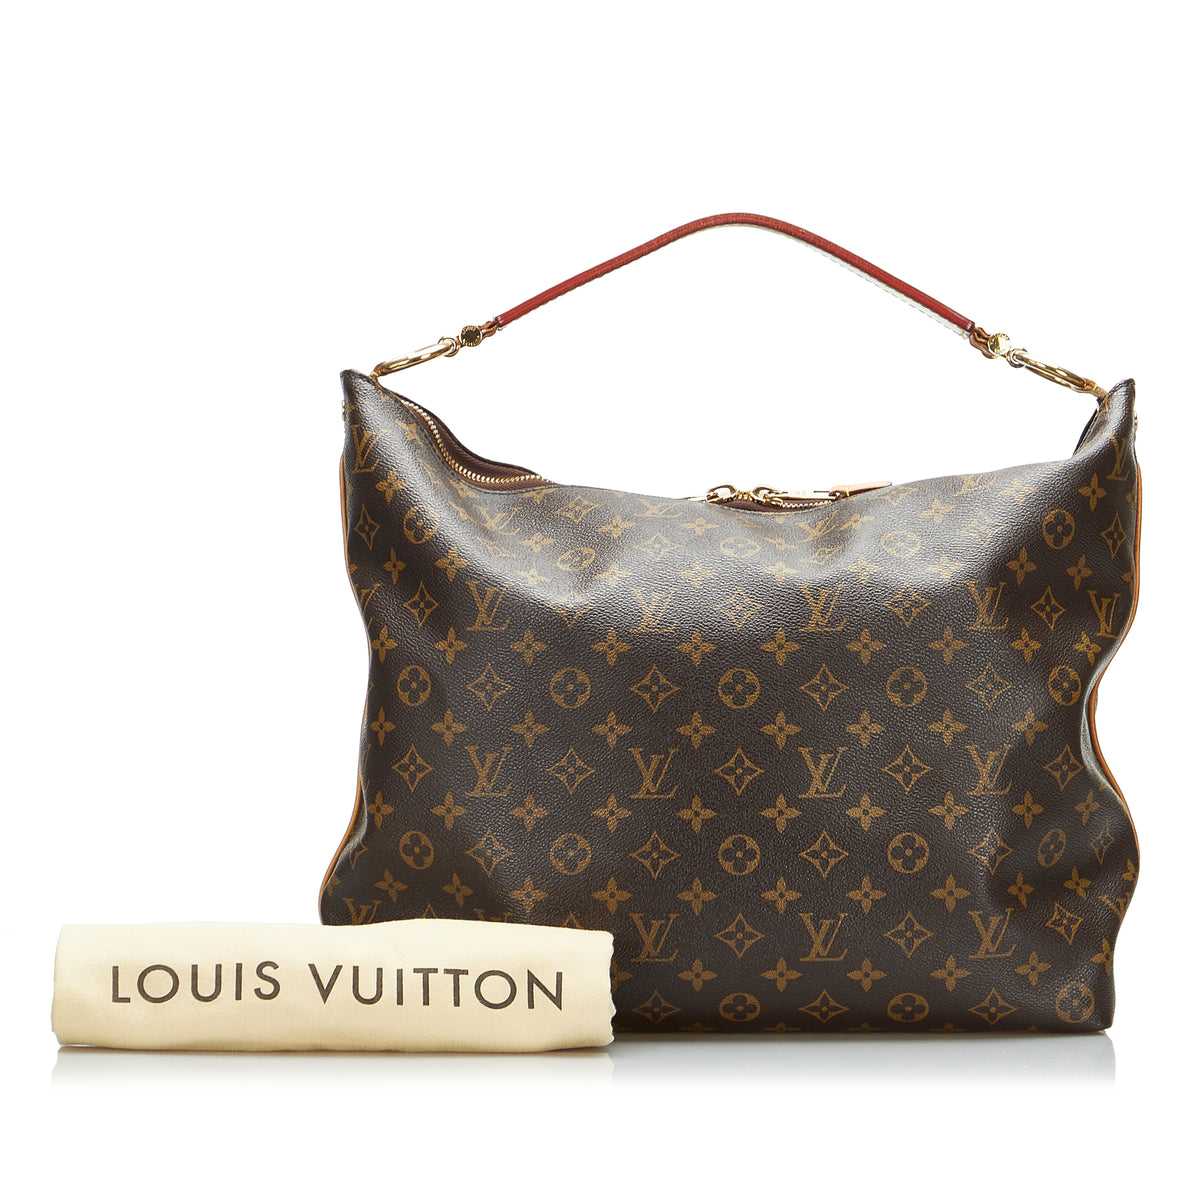 Preloved Louis Vuitton Sully MM Monogram Hobo Shoulder Bag TJ0164 080123  $150 OFF